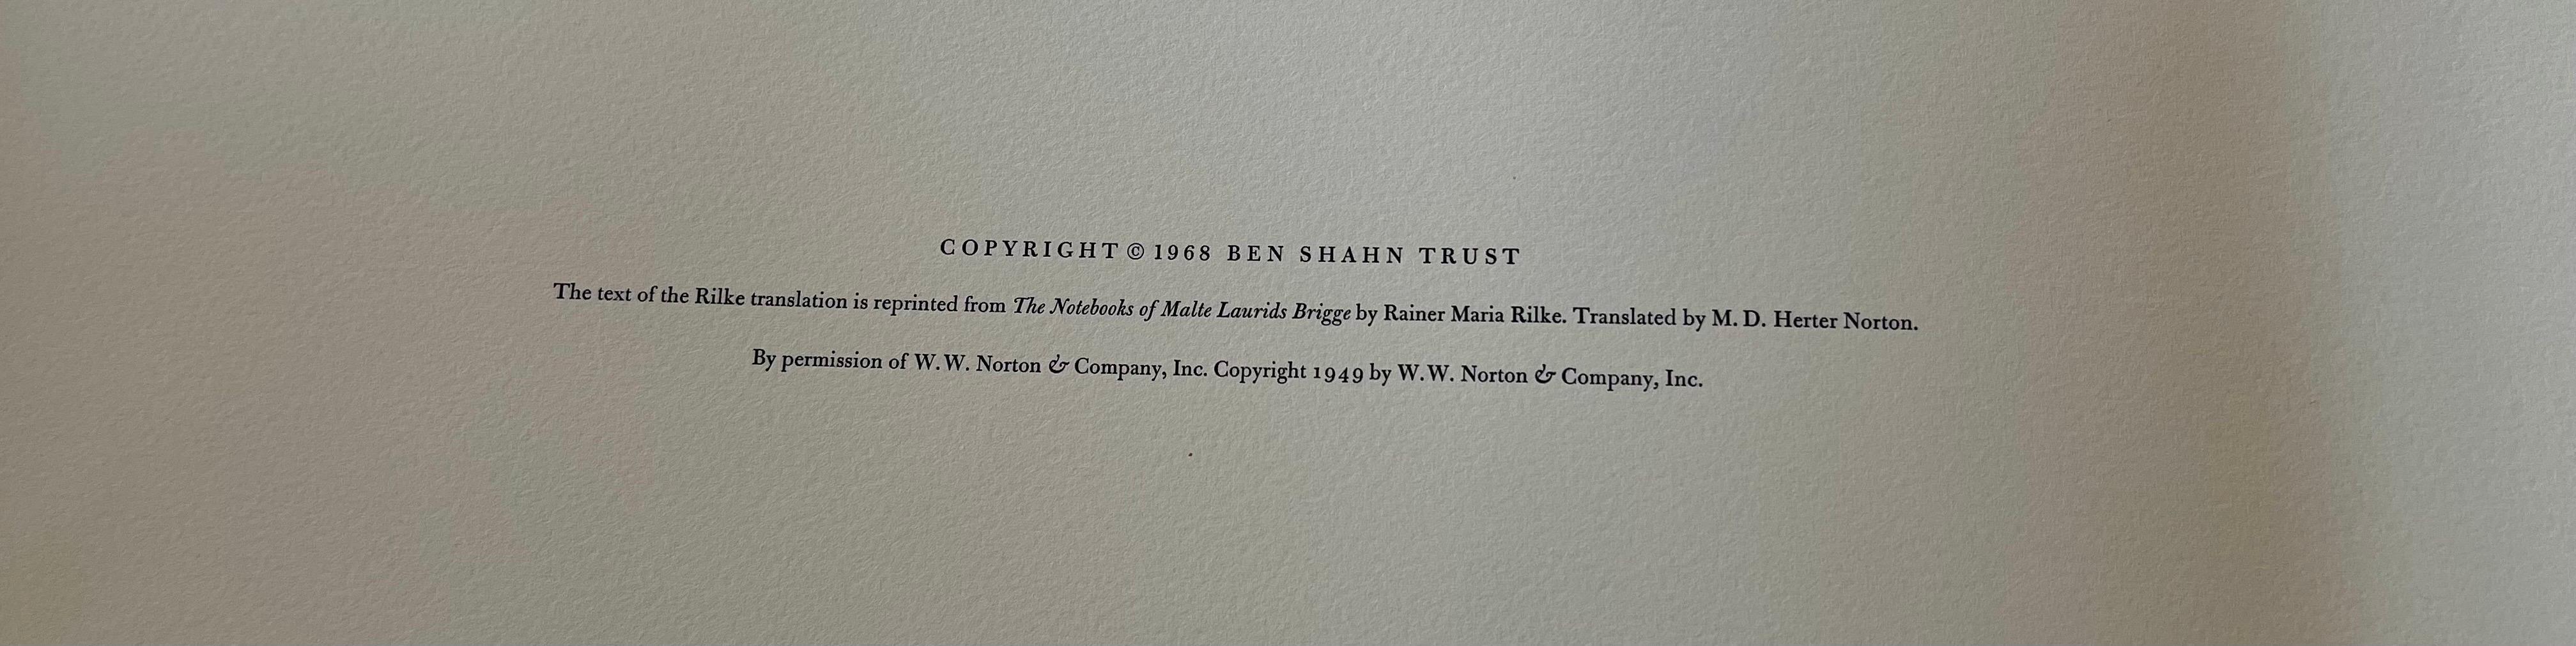 Ben Shahn portfolio très convoité en édition limitée #234 avec 24 lithographies de R. M. Rilke en vente 2